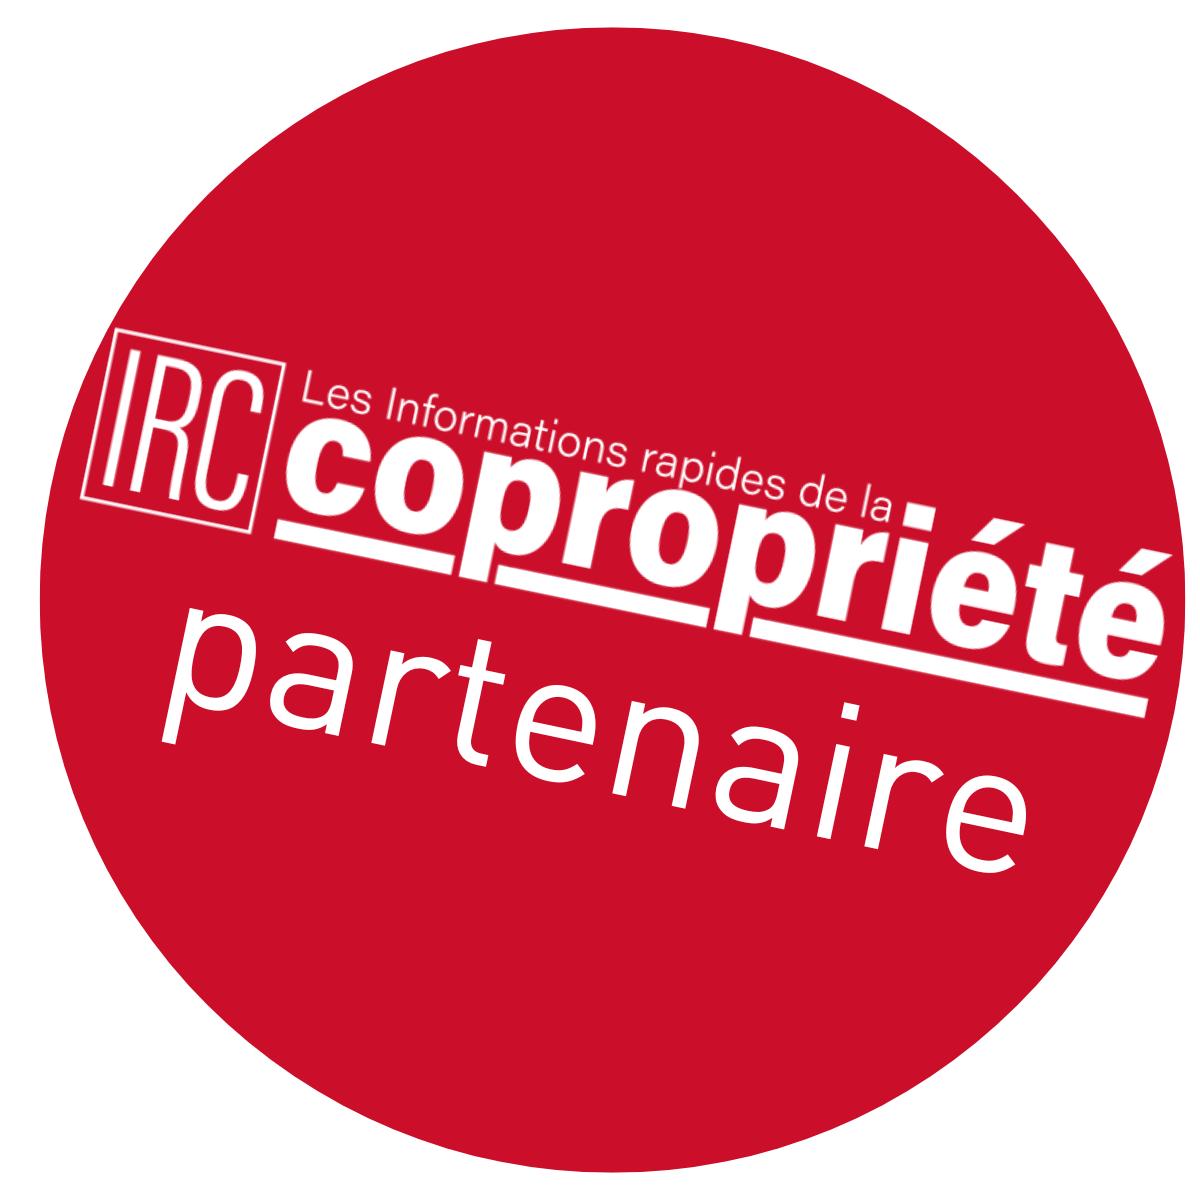 IRC copropriété partenaire